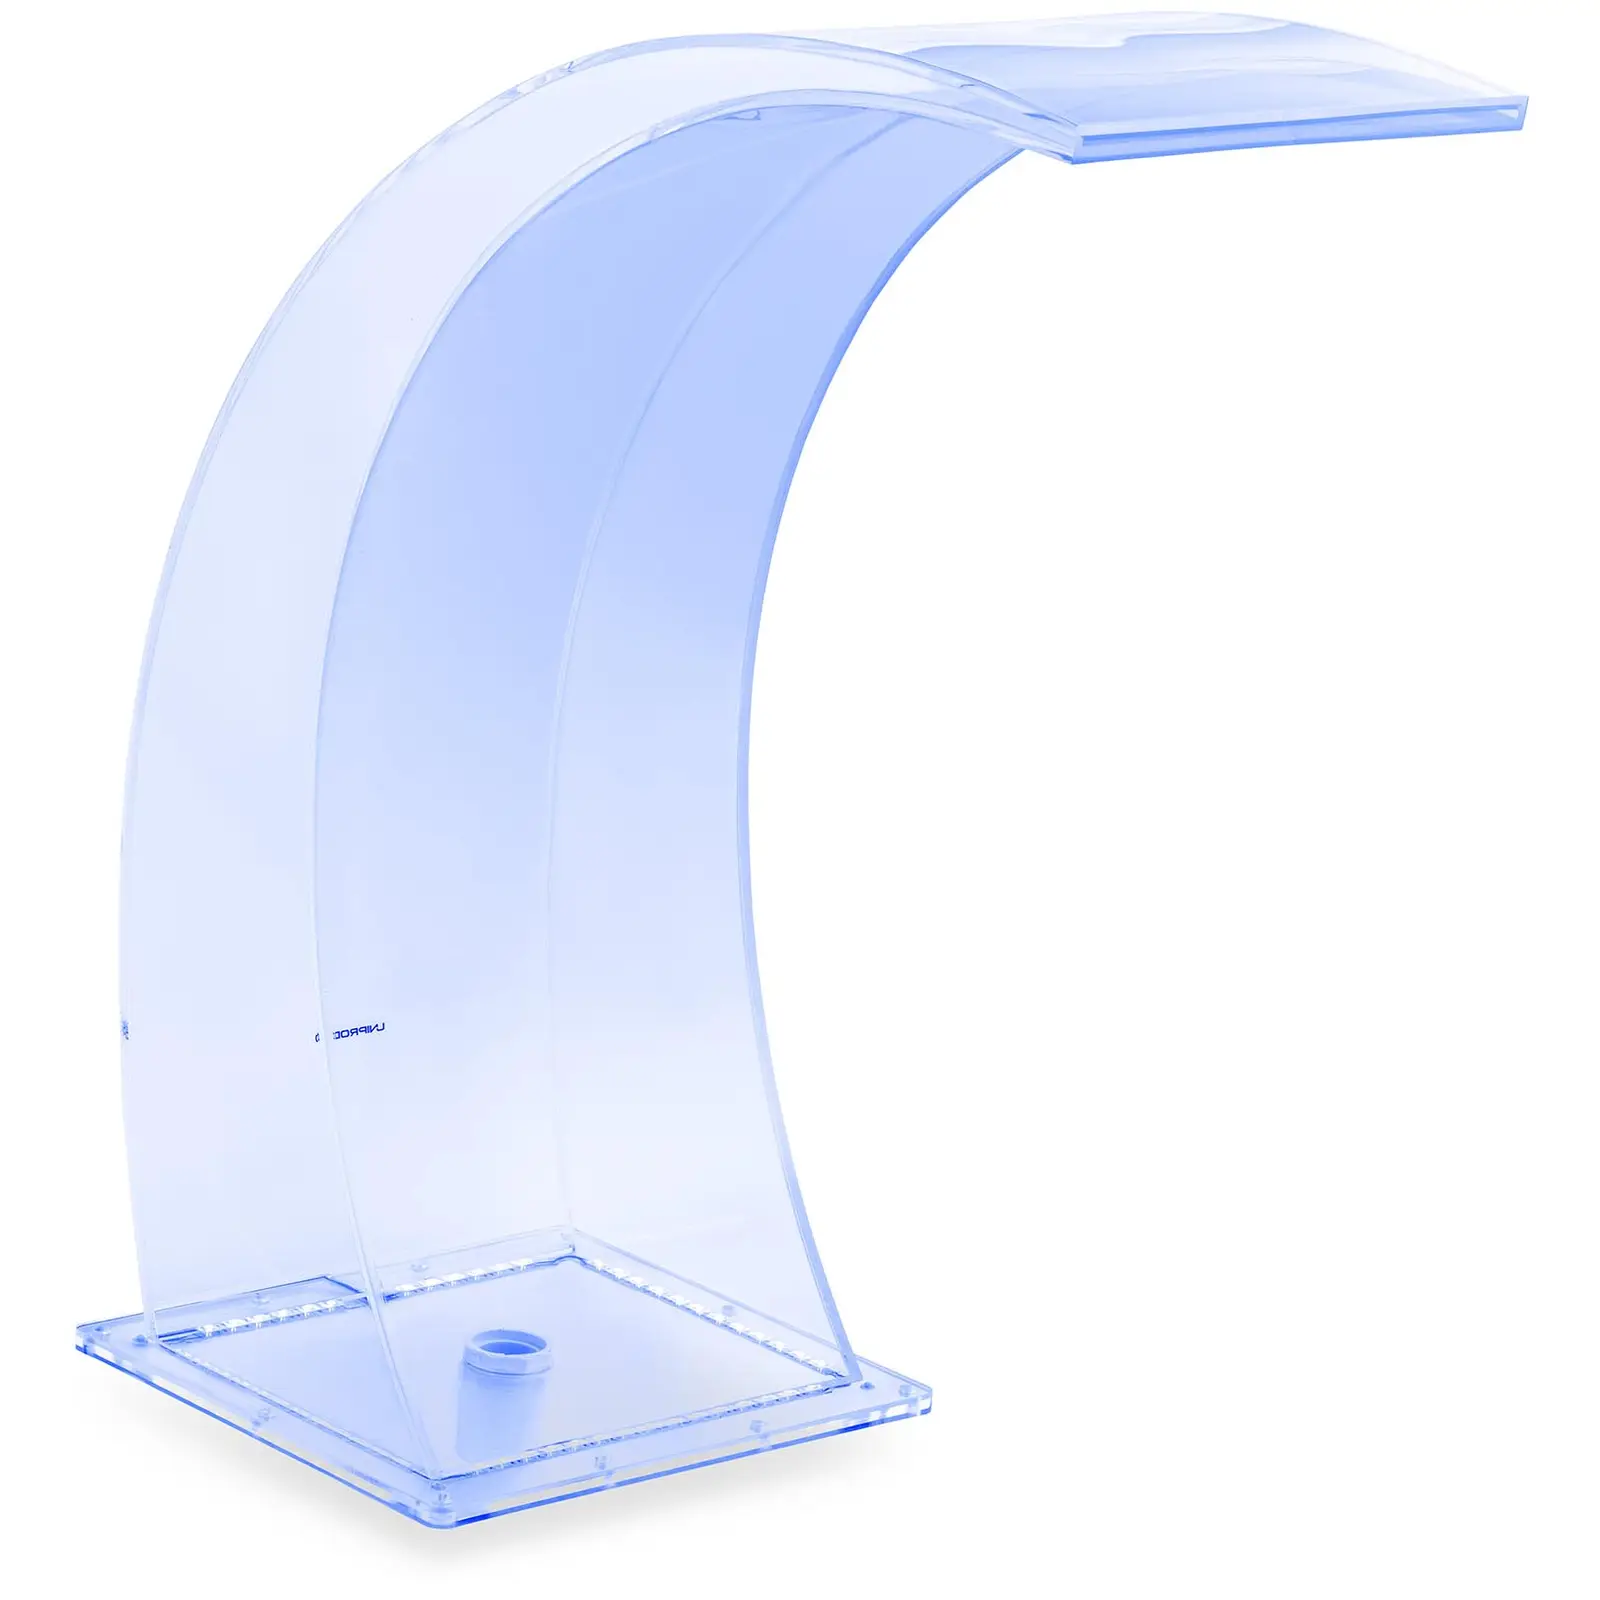 Naponski tuš-35 cm - LED rasvjeta - Plava / Bijela